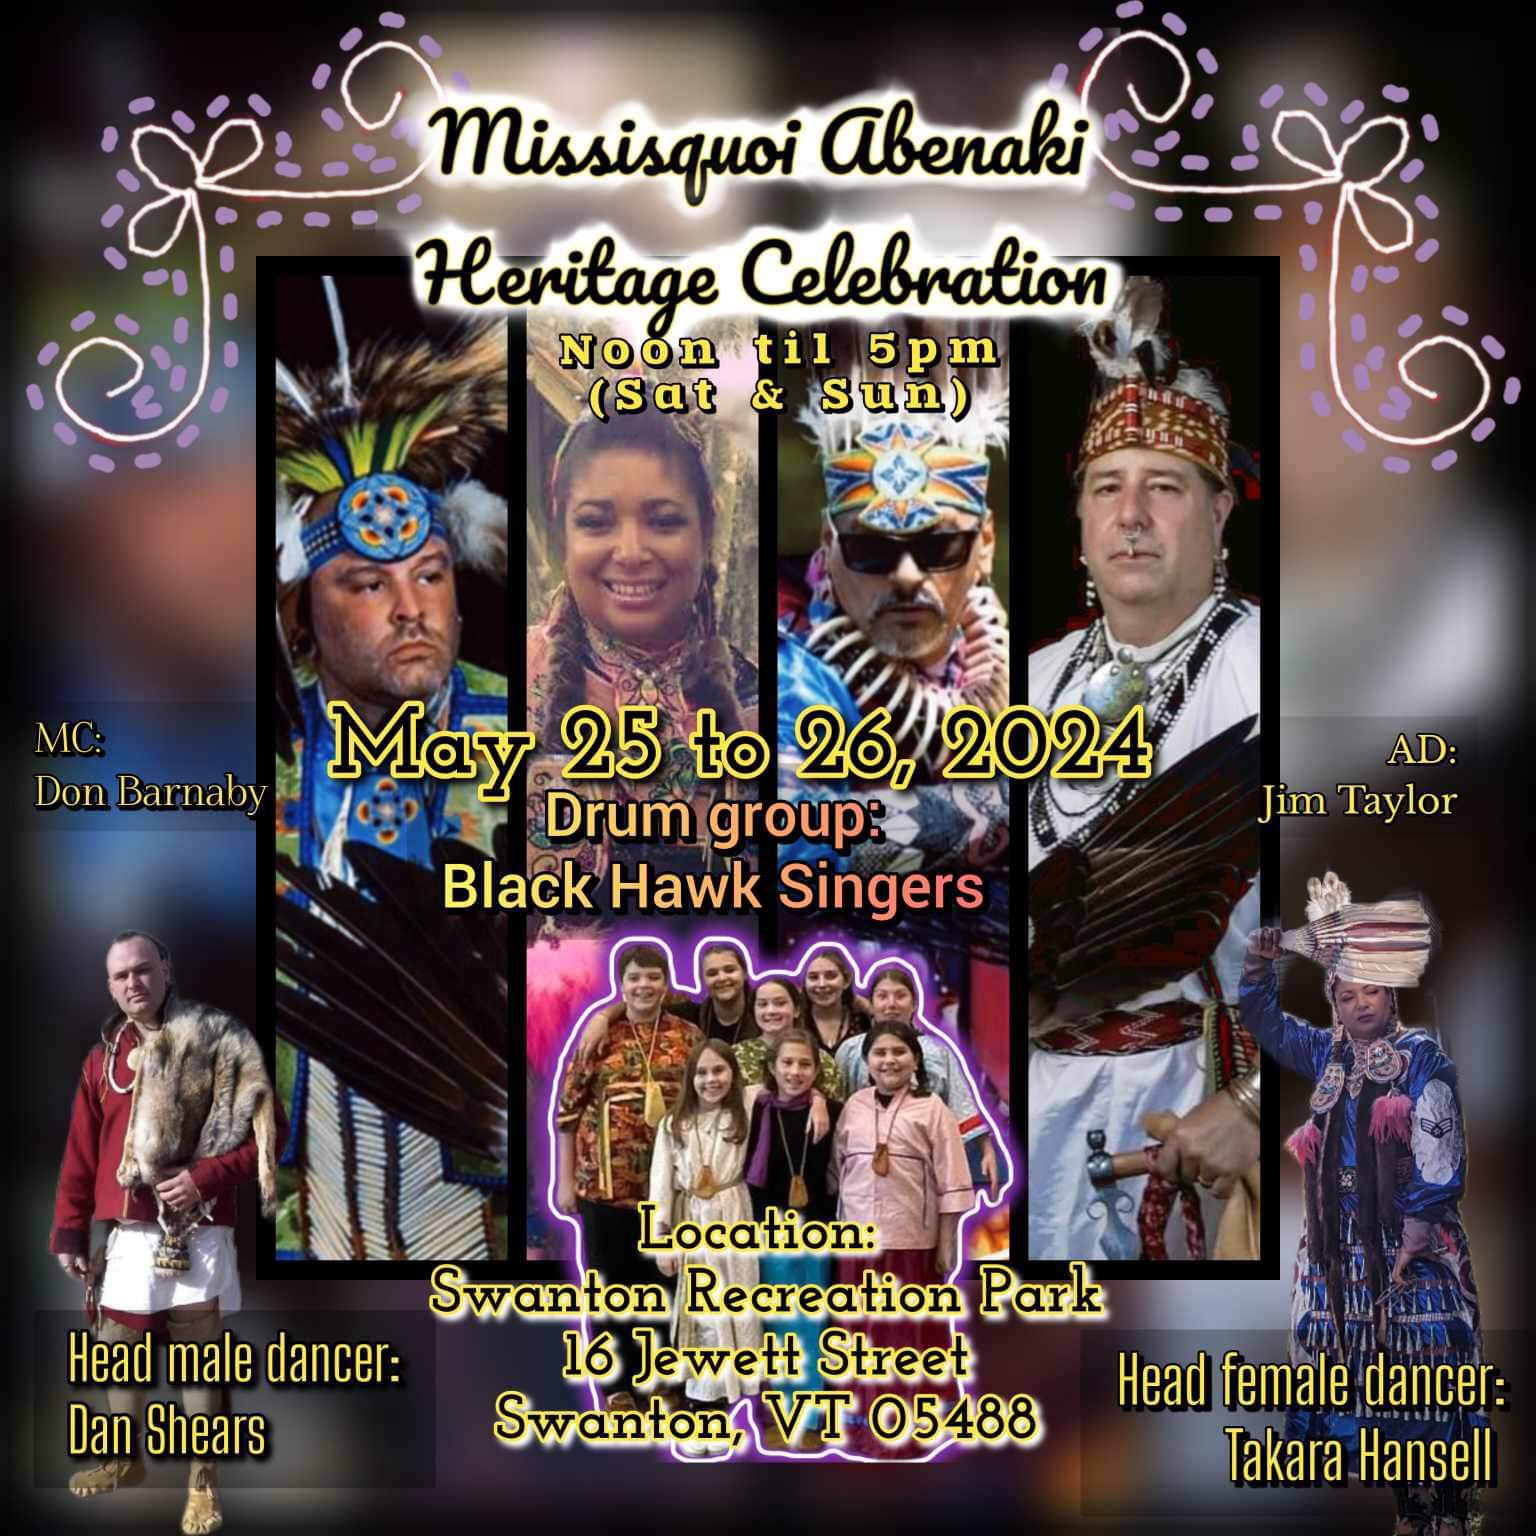 Missisquoi Abenaki Heritage Celebration poster.